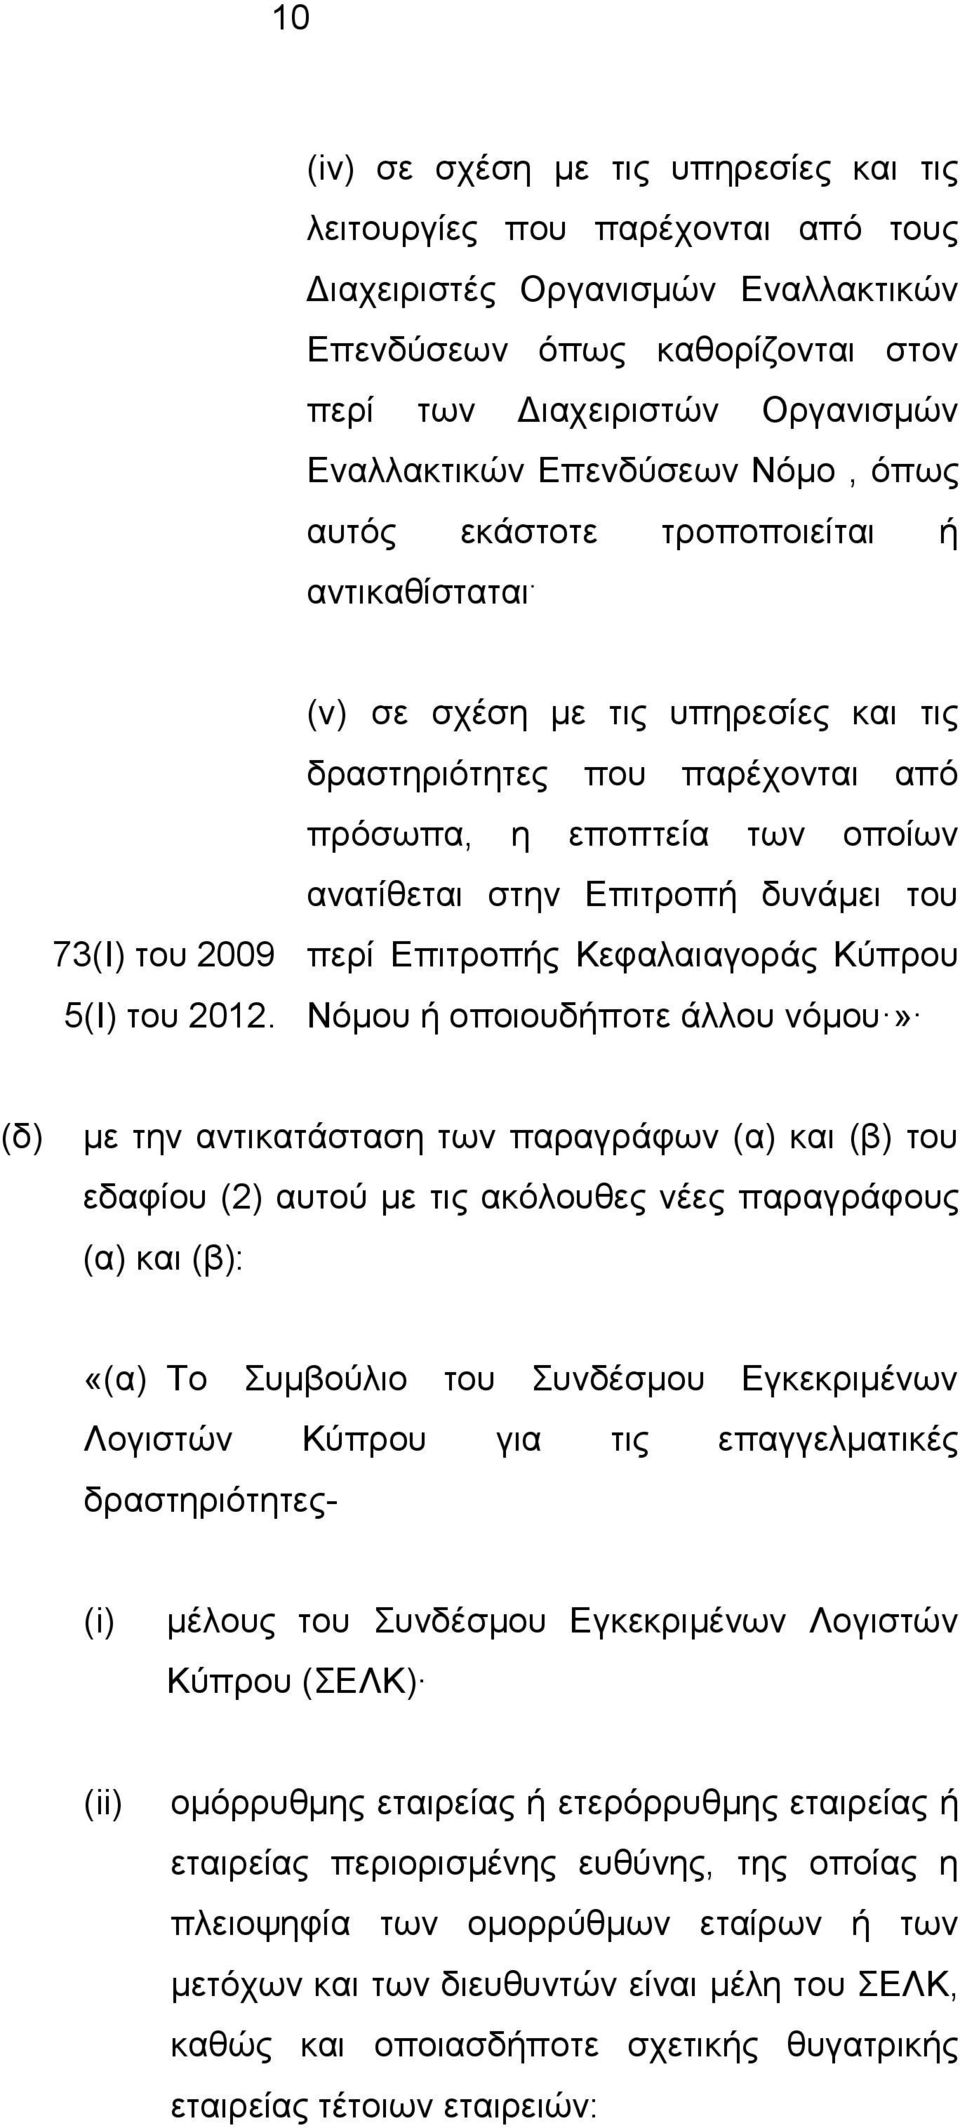 (v) σε σχέση με τις υπηρεσίες και τις δραστηριότητες που παρέχονται από πρόσωπα, η εποπτεία των οποίων ανατίθεται στην Επιτροπή δυνάμει του περί Επιτροπής Κεφαλαιαγοράς Κύπρου Νόμου ή οποιουδήποτε